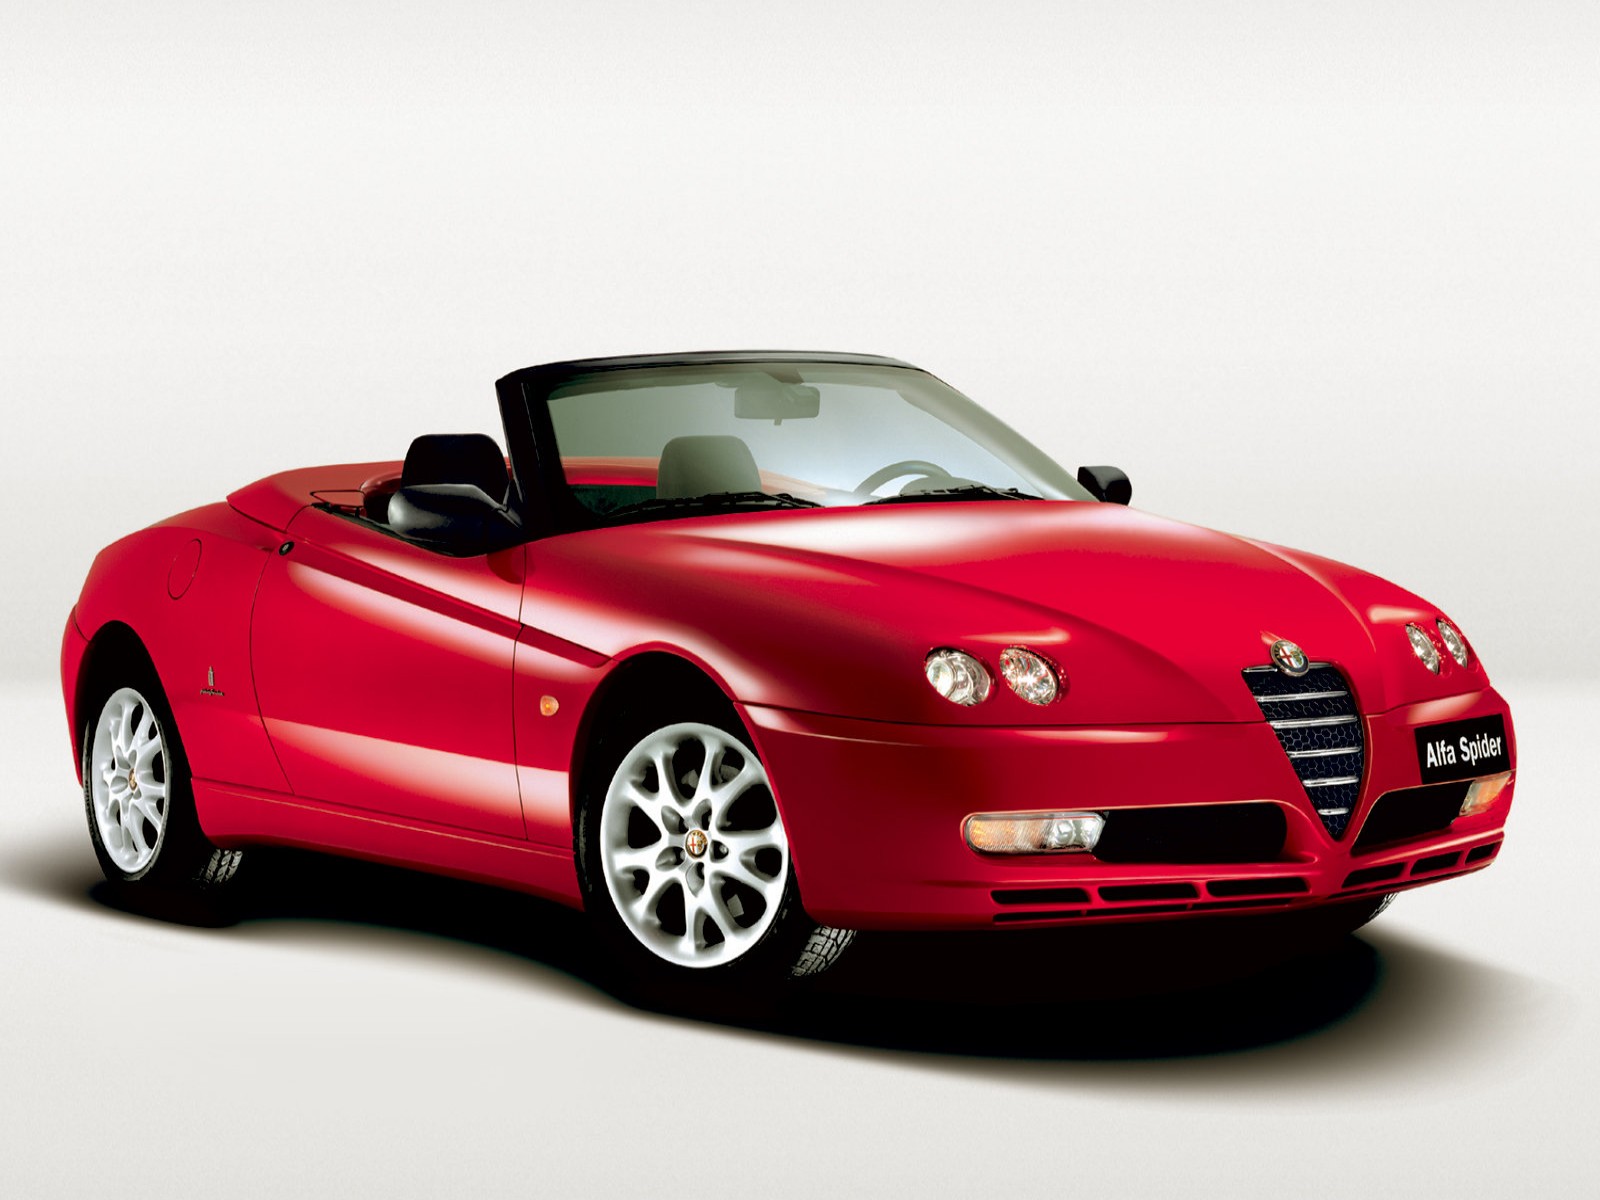 Télécharger des fonds d'écran Araignée Alfa Romeo Gtv HD